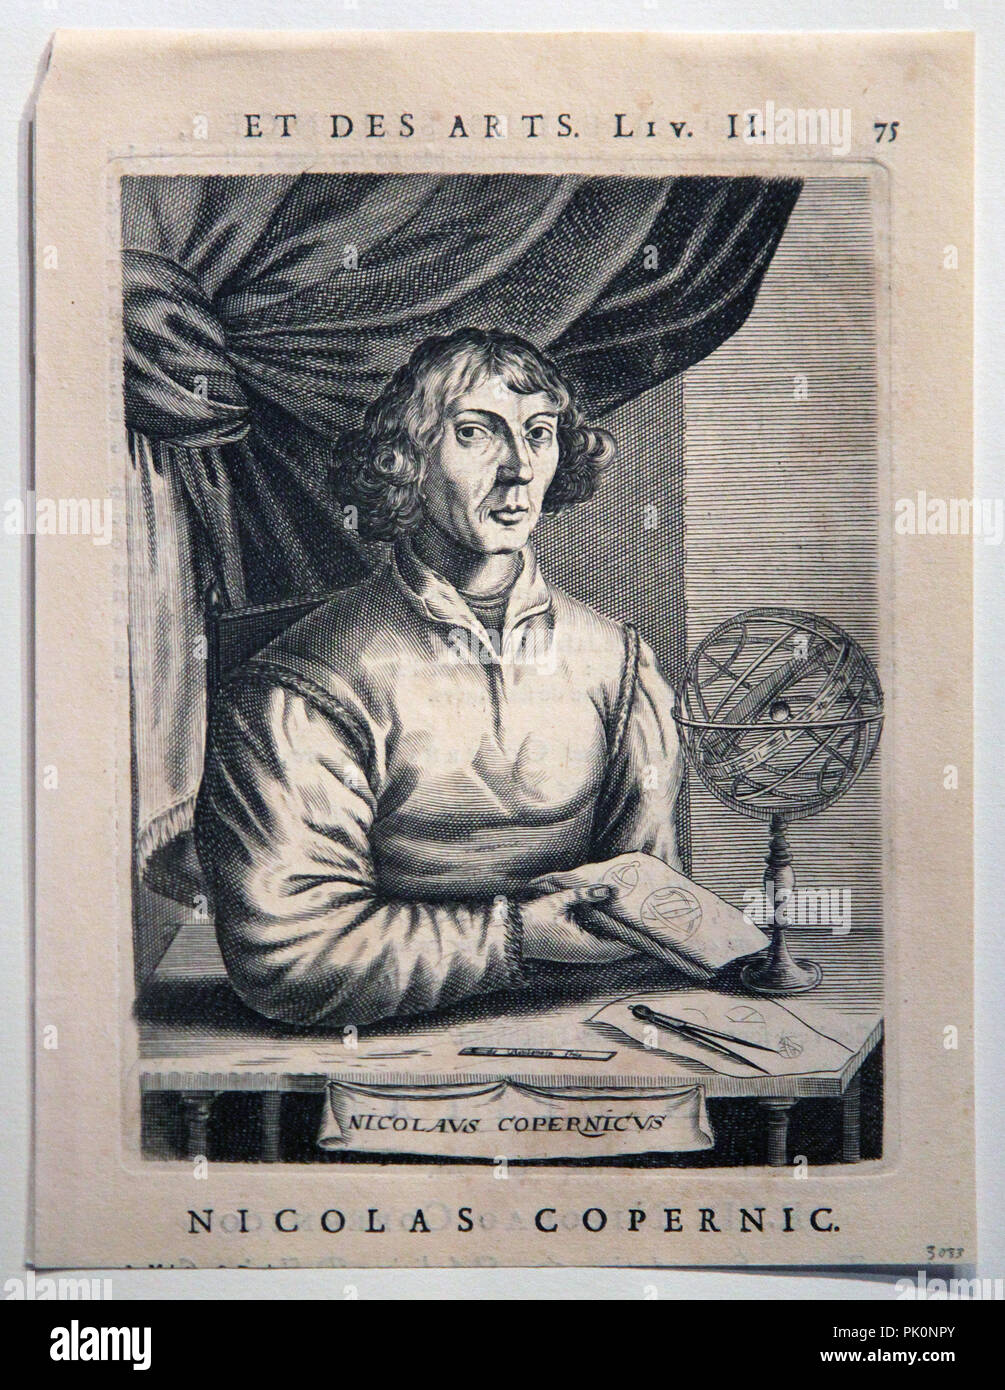 Nicolaus Copernicus 1473 1543 Mathematicien Et Astronome Il A Formule Un Modele De L Univers Qui A Place Le Soleil Au Centre De La Terre Photo Stock Alamy